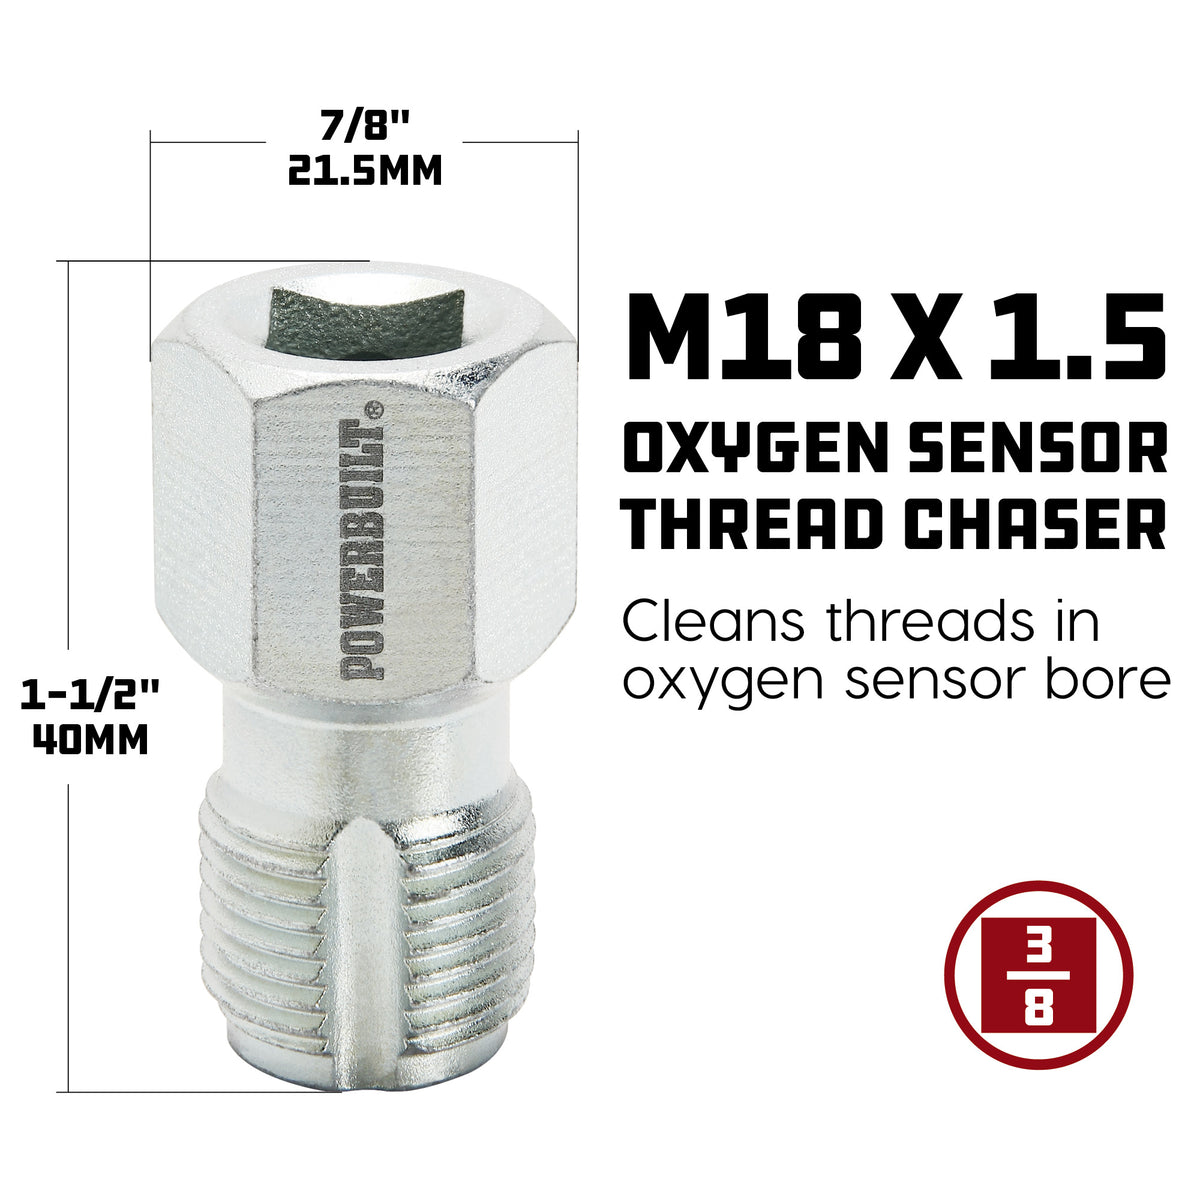 Oxygen Sensor Thread Chaser